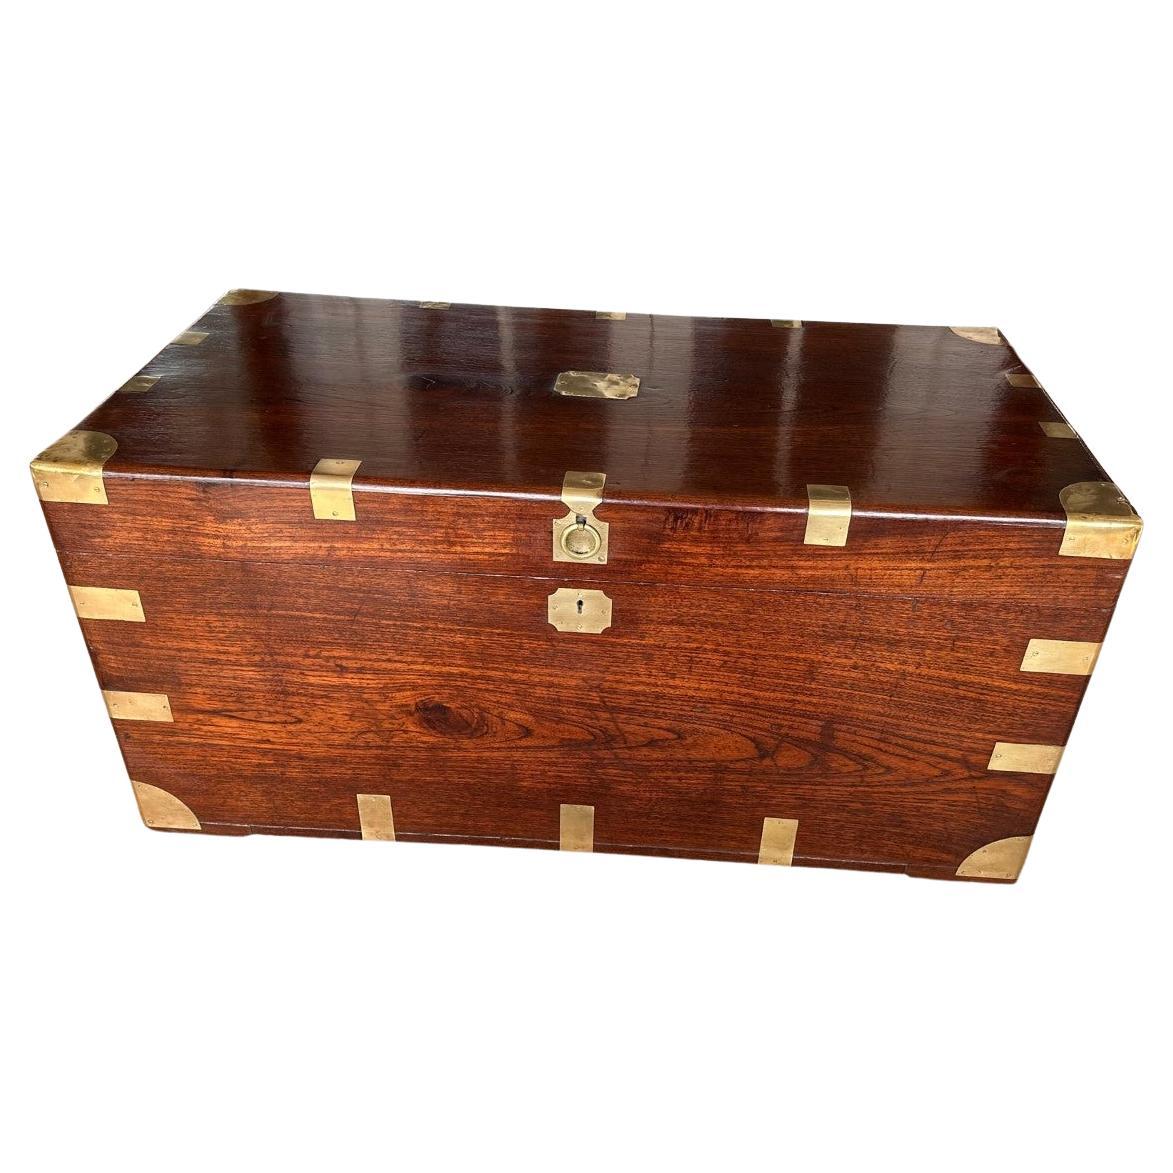 Antique teak colonial chest